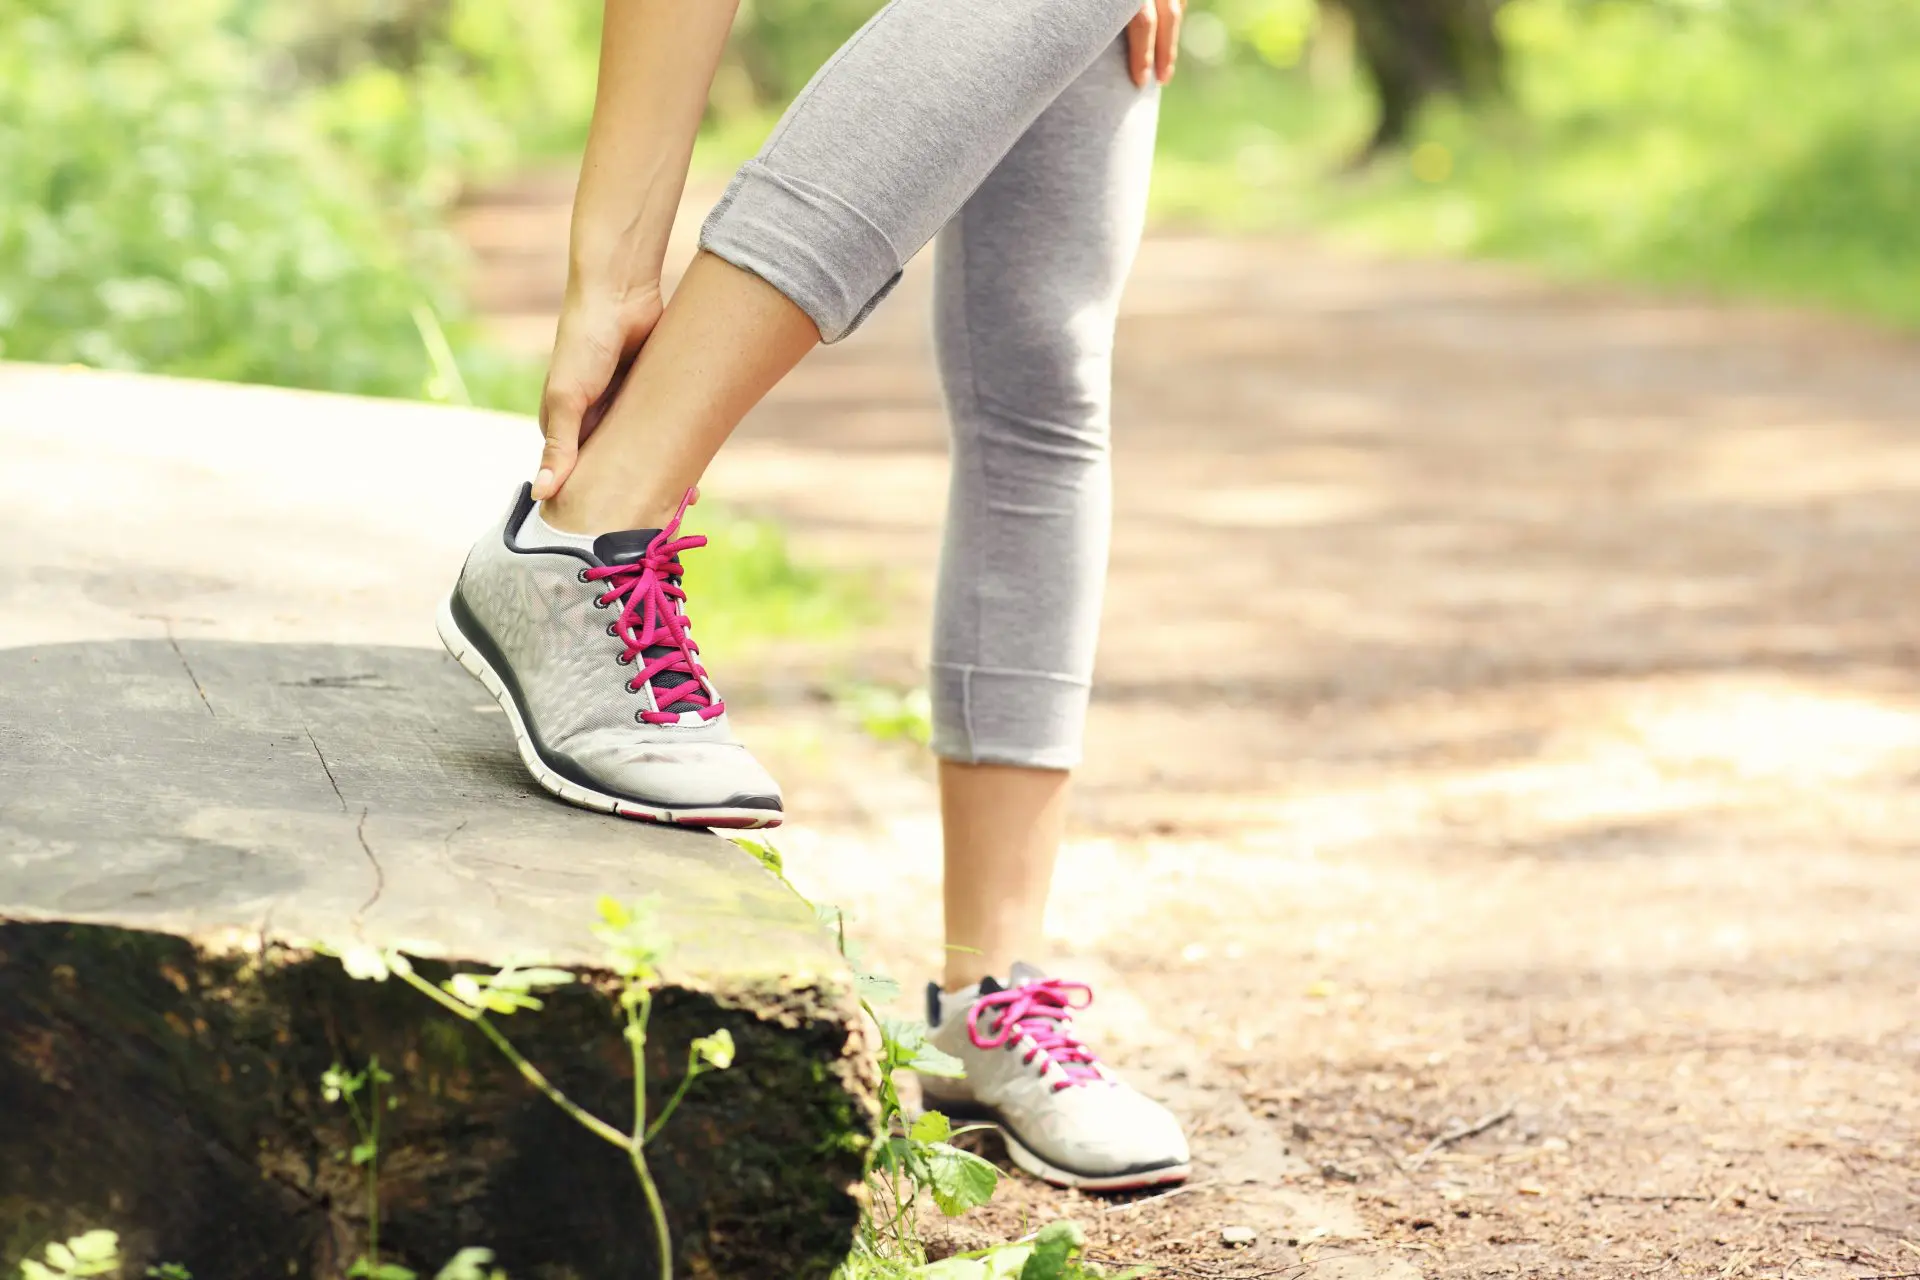 Heel Pain & Running: Top 5 Shoes for Heel Pain